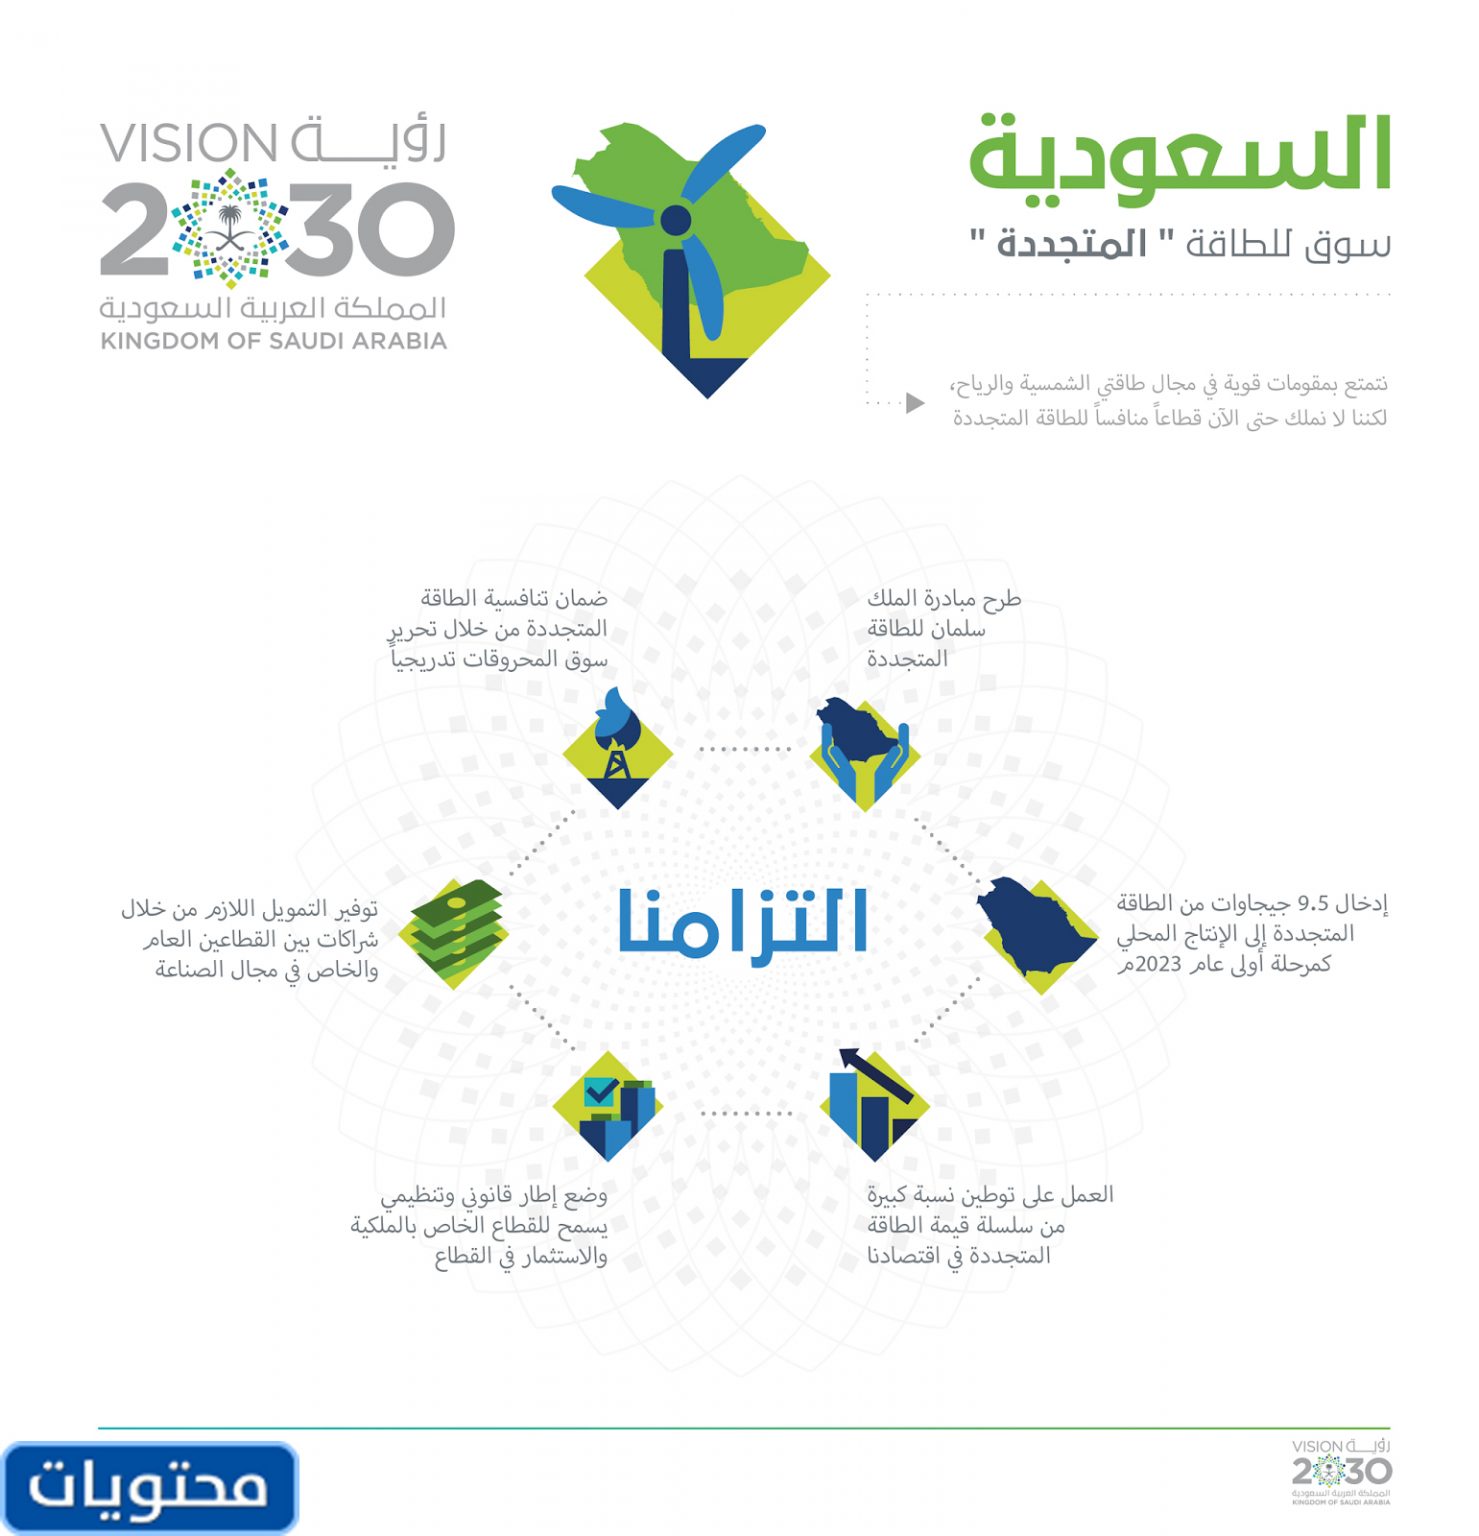 صور رؤية 2030 جديدة وصور خطوات رؤية 2030 موقع محتويات